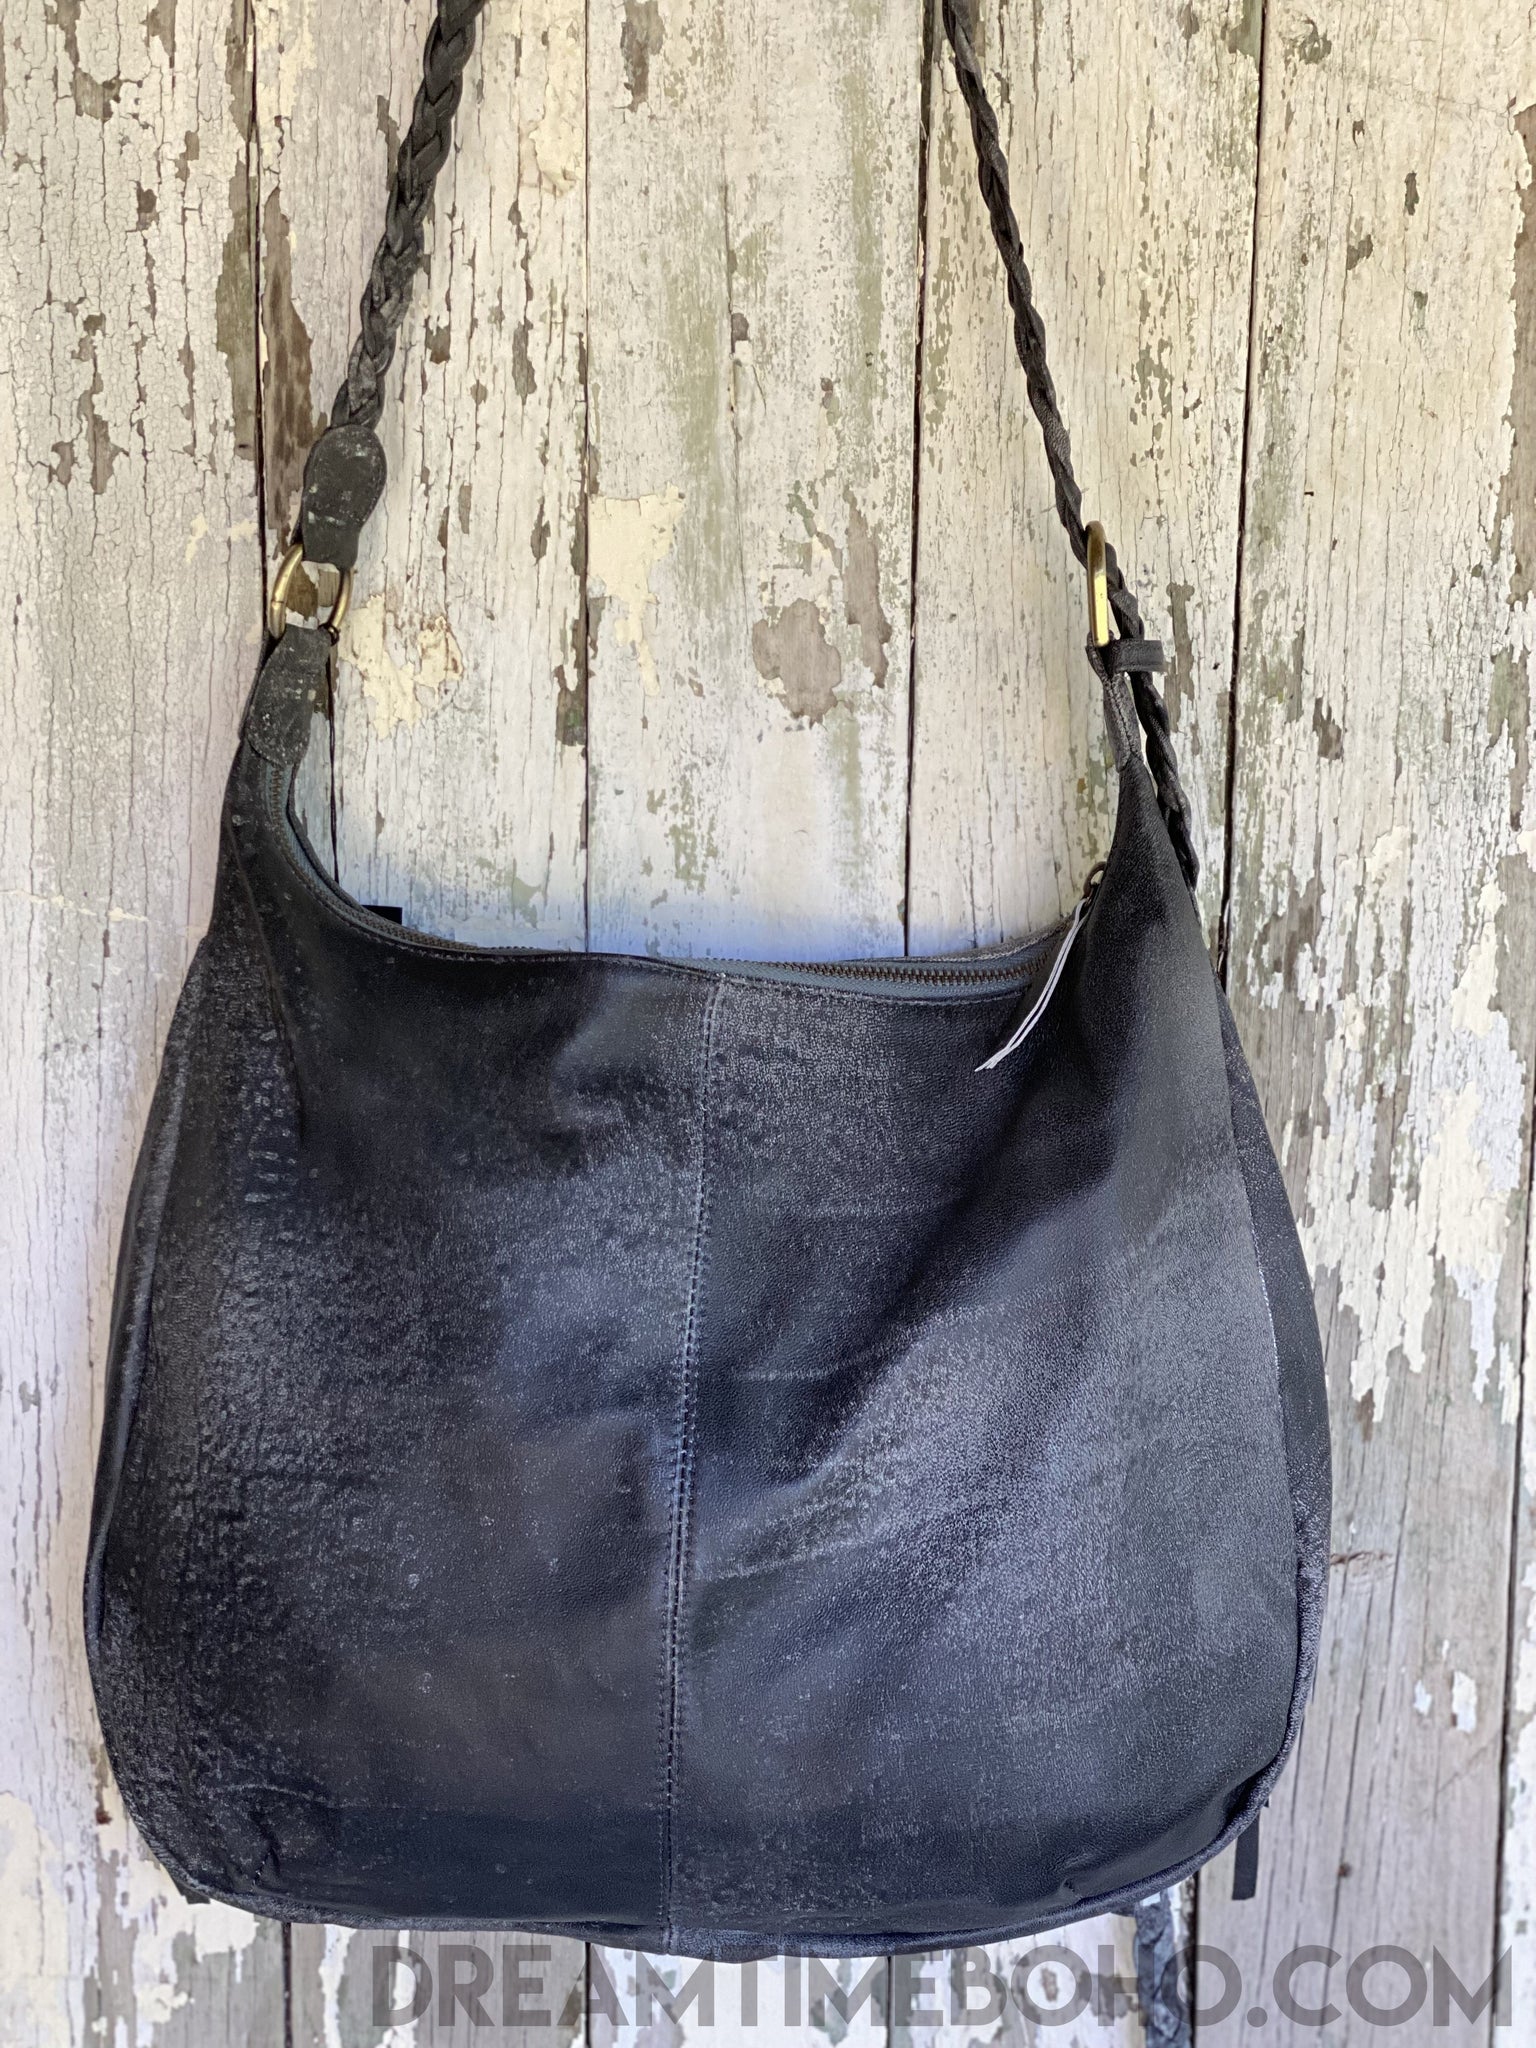 Vintage Boho Leather Fringe Crossbody Bag